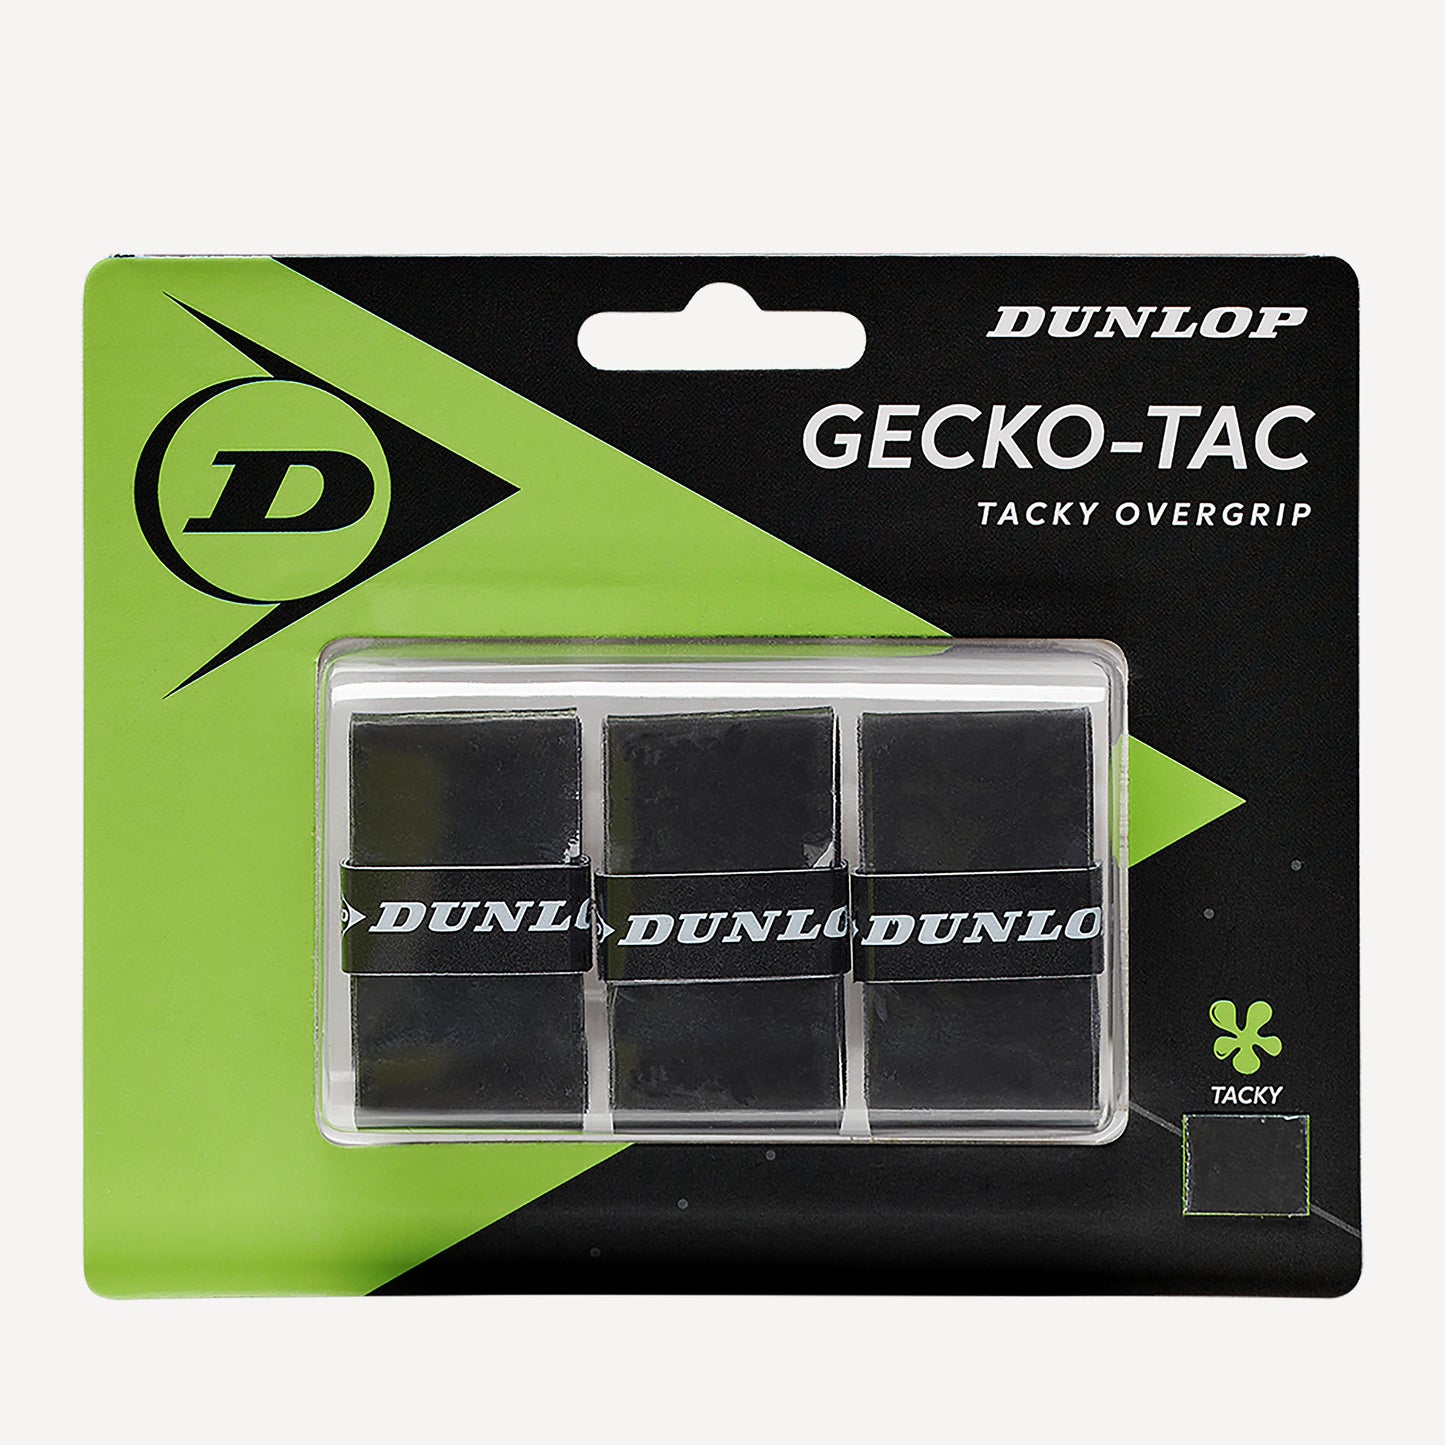 Dunlop Gecko-Tac Tennis Overgrip 1